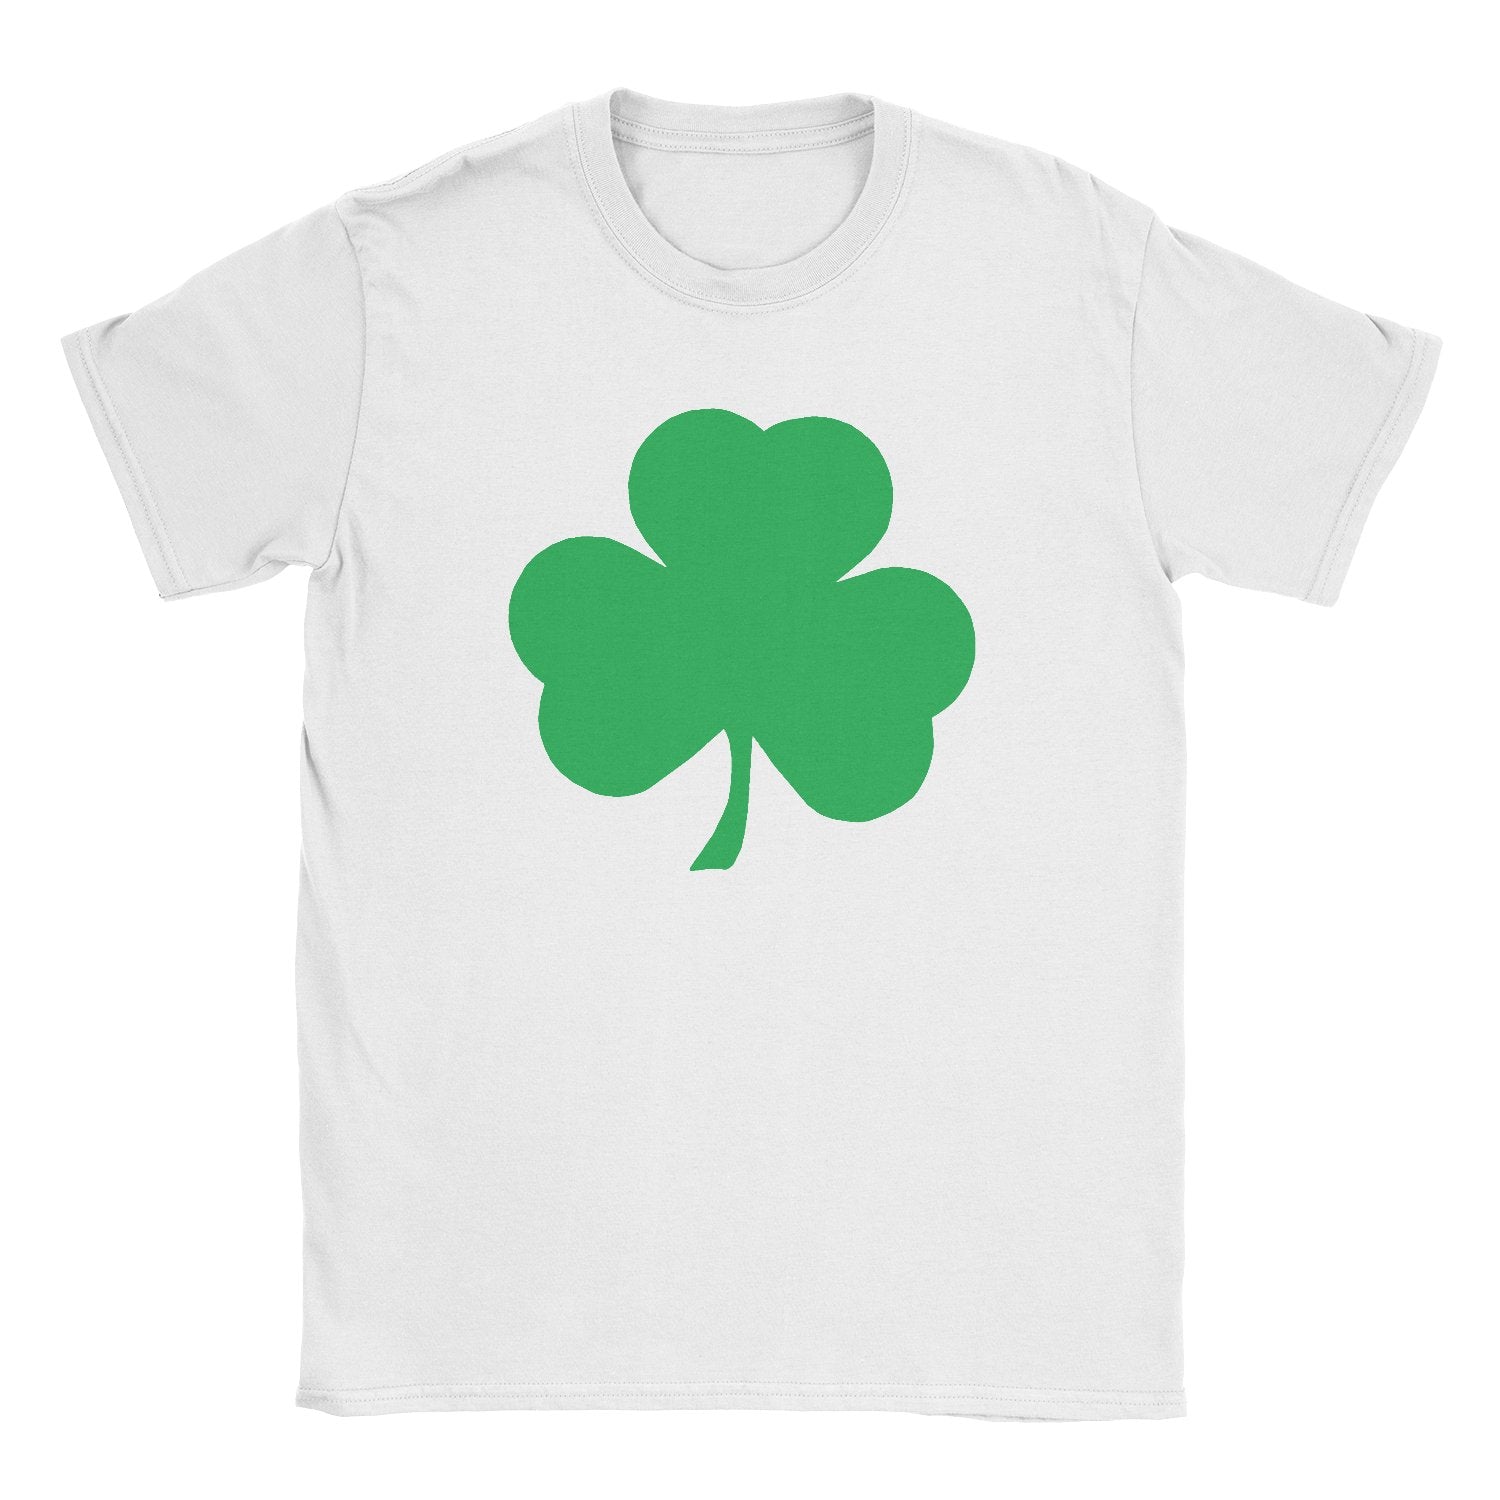 Kleeblatt-Kinder-T-Shirt (großes solides Design, weiß und grün)